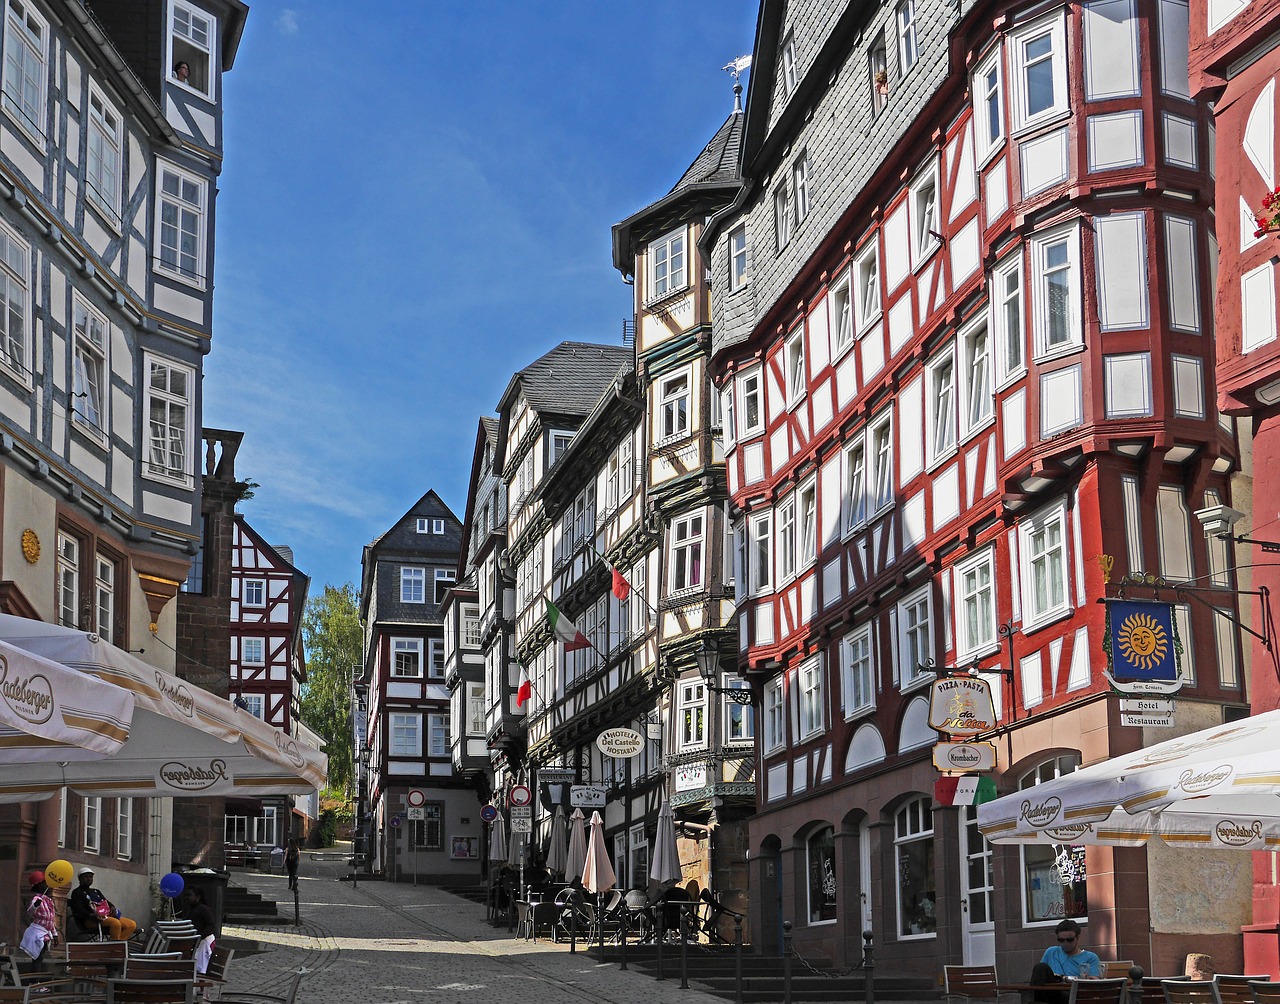 Marburg, na Rota dos Contos de Fada